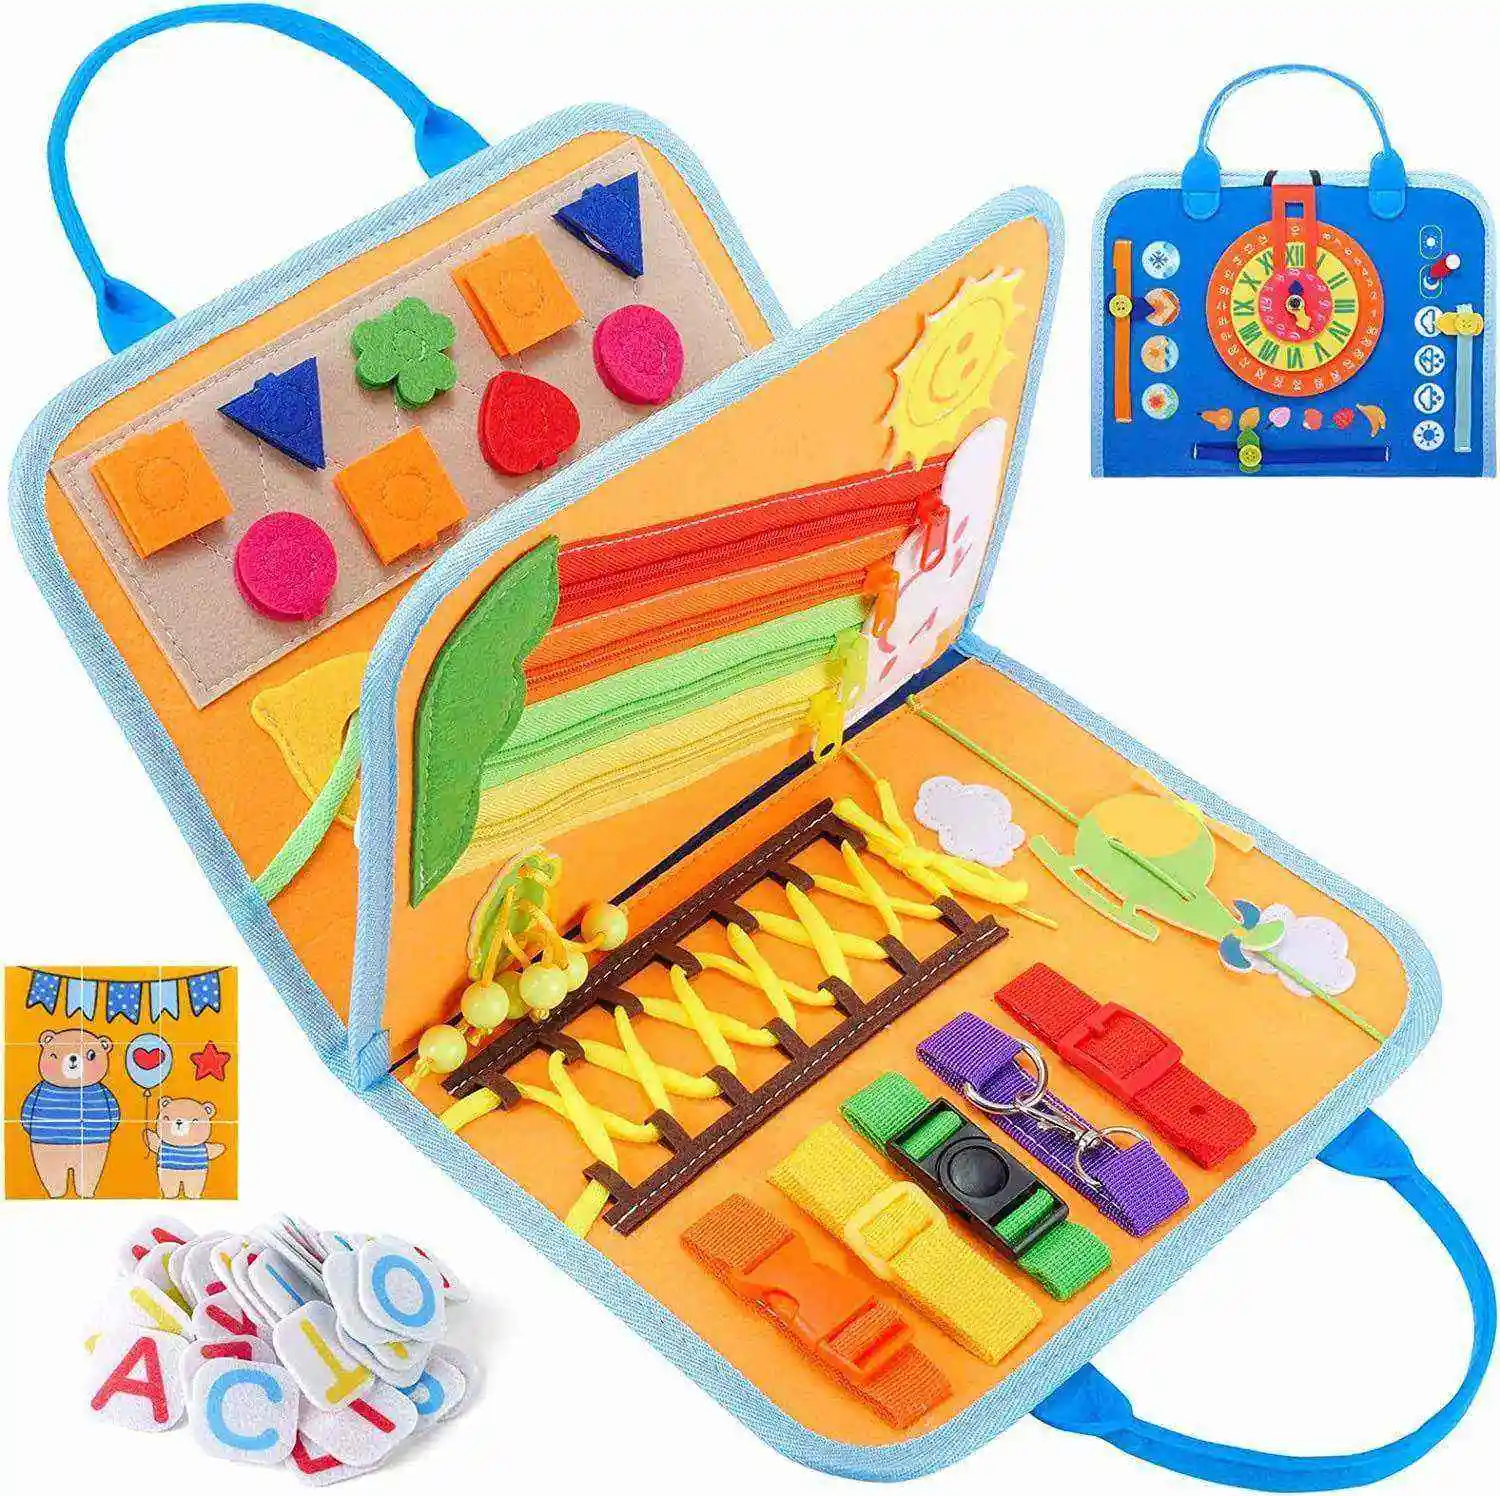 Livro de tabuleiro de feltro para crianças, brinquedo sensorial educacional personalizado de feltro para crianças, livro de tabuleiro montessori para crianças, produtos em alta